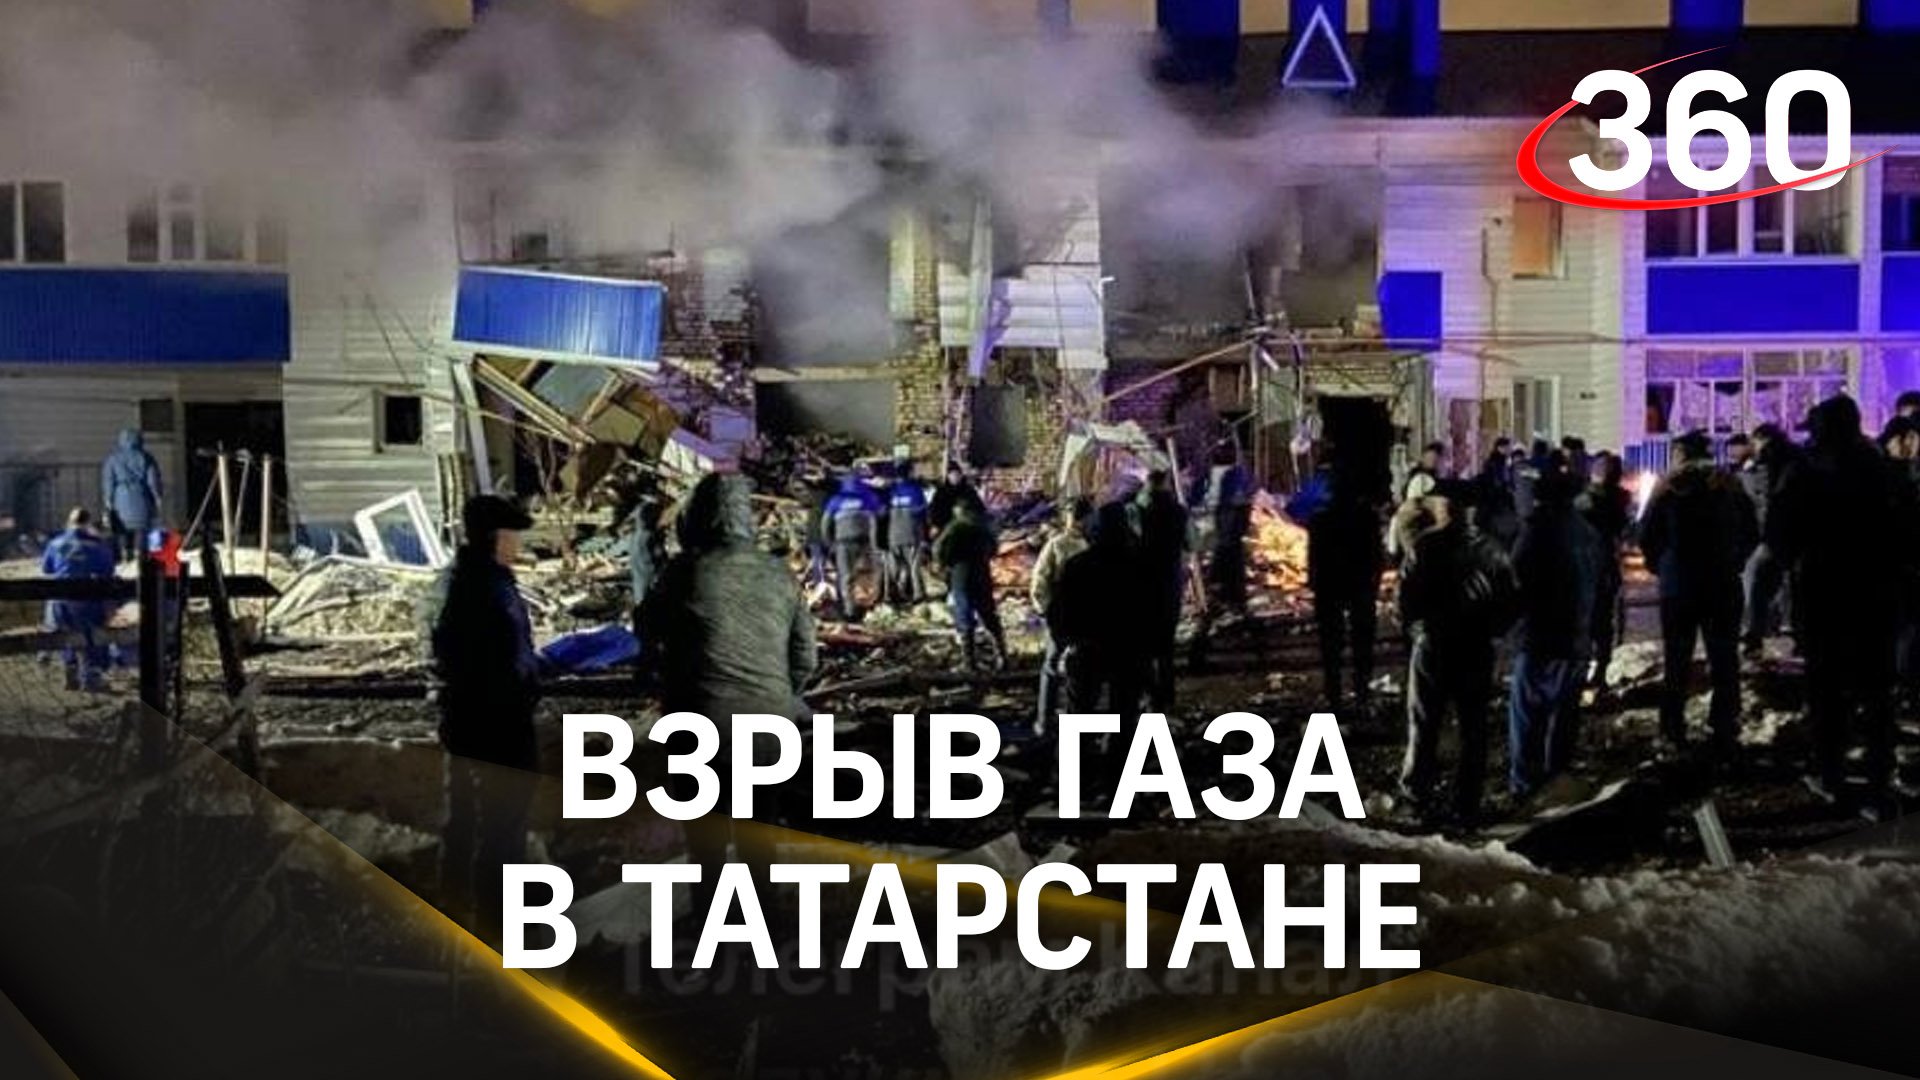 Взрыв газа в жилом доме Татарстане – один человек погиб, два пострадали. Кадры с места ЧП